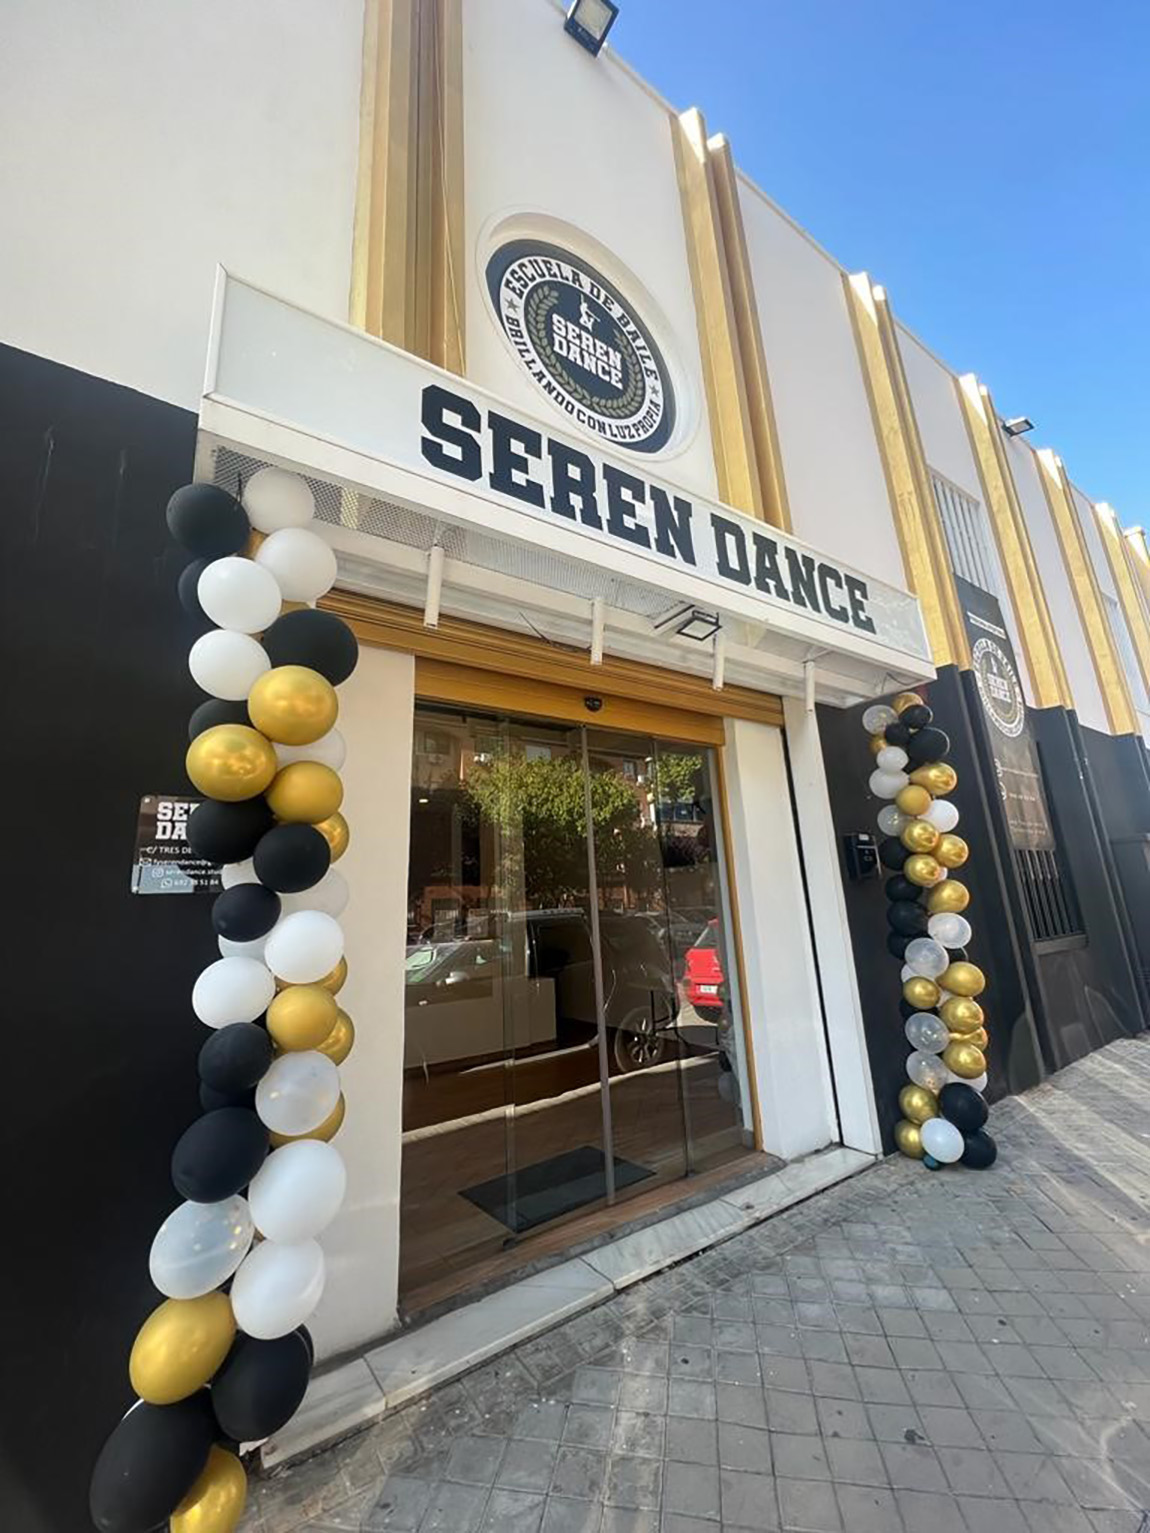 El estudio de danza “Seren Dance” inaugura unas nuevas instalaciones en Torrejón de Ardoz